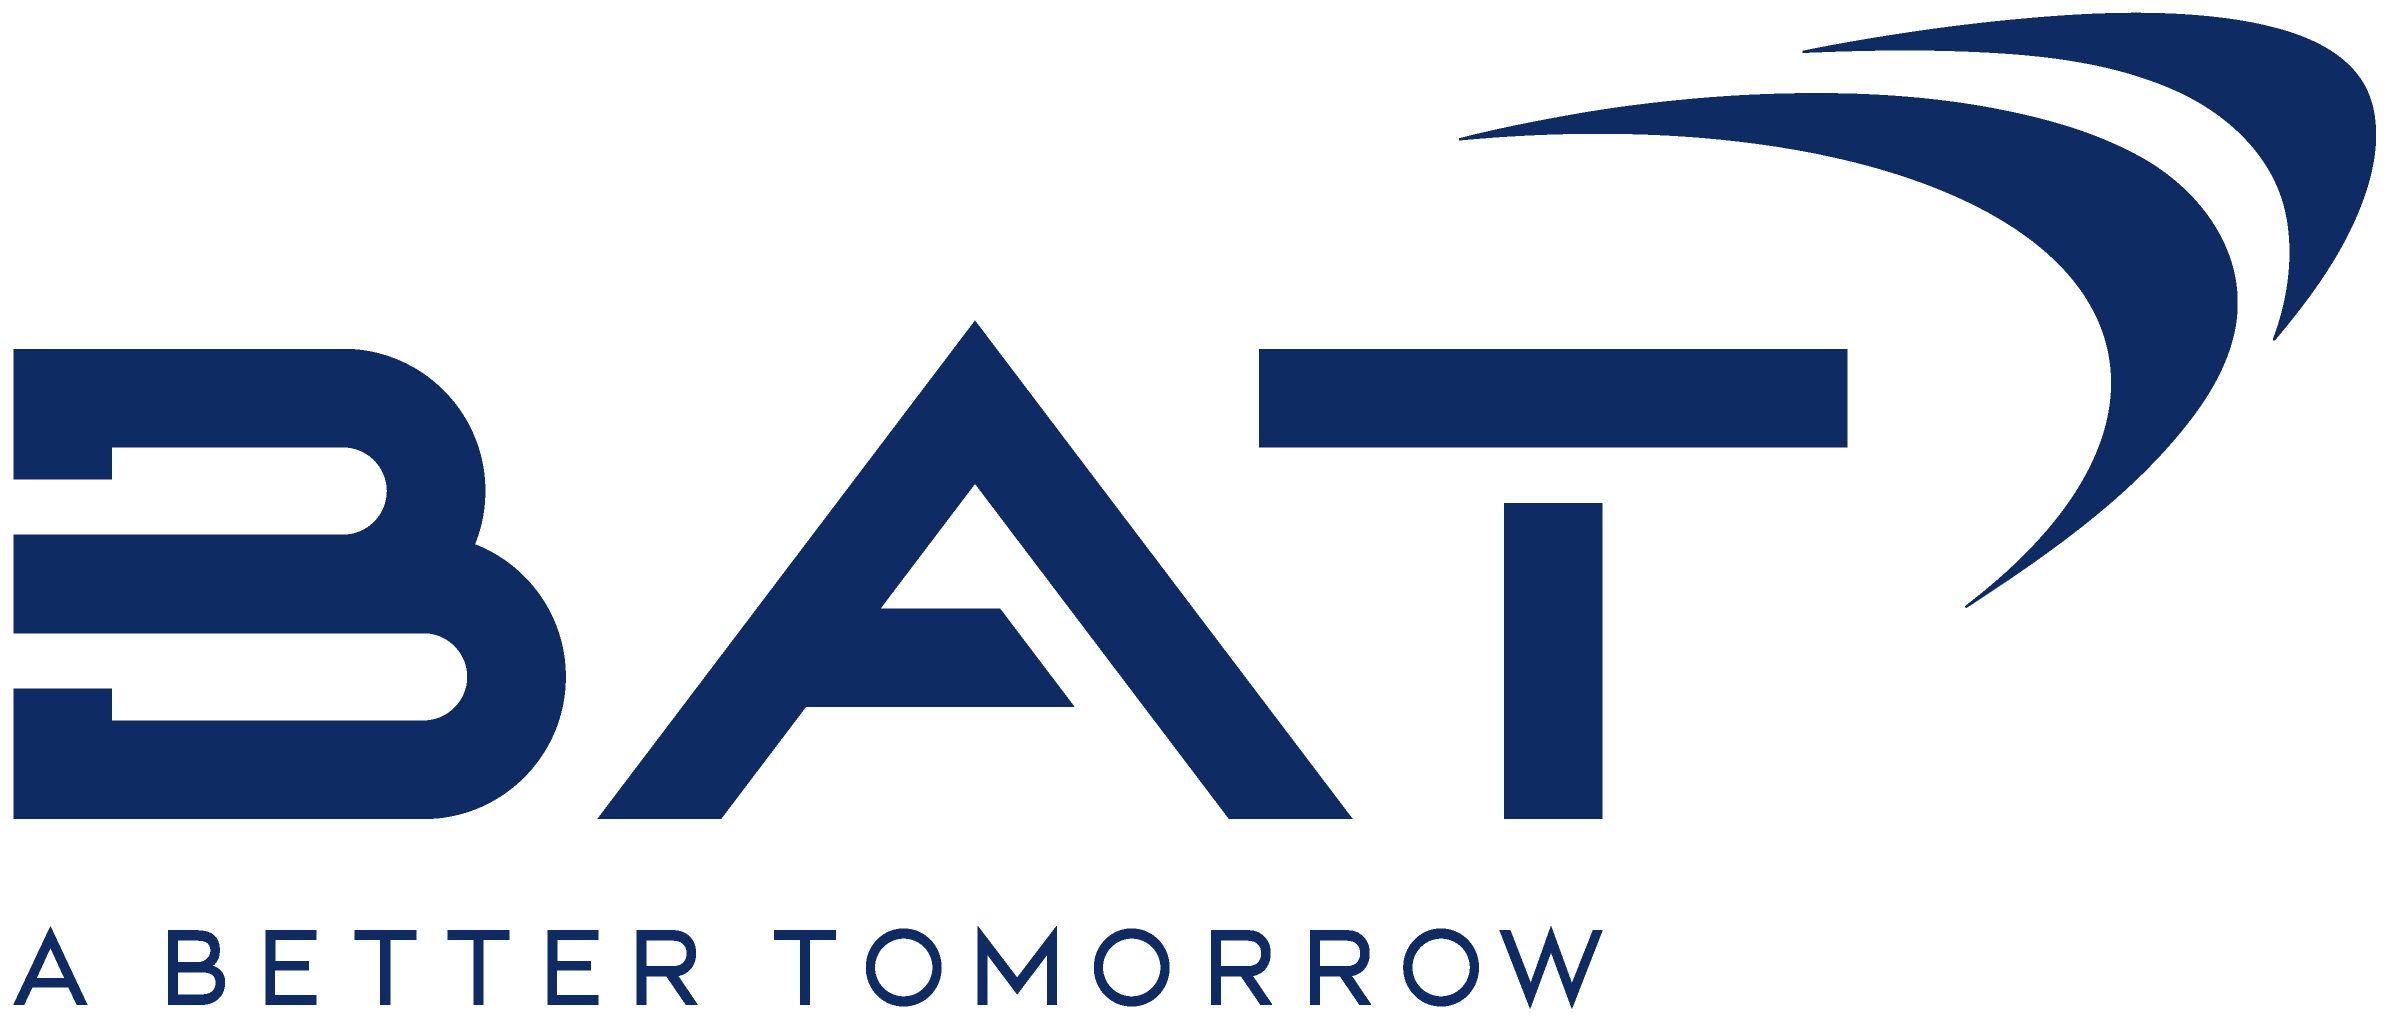 BAT_logo